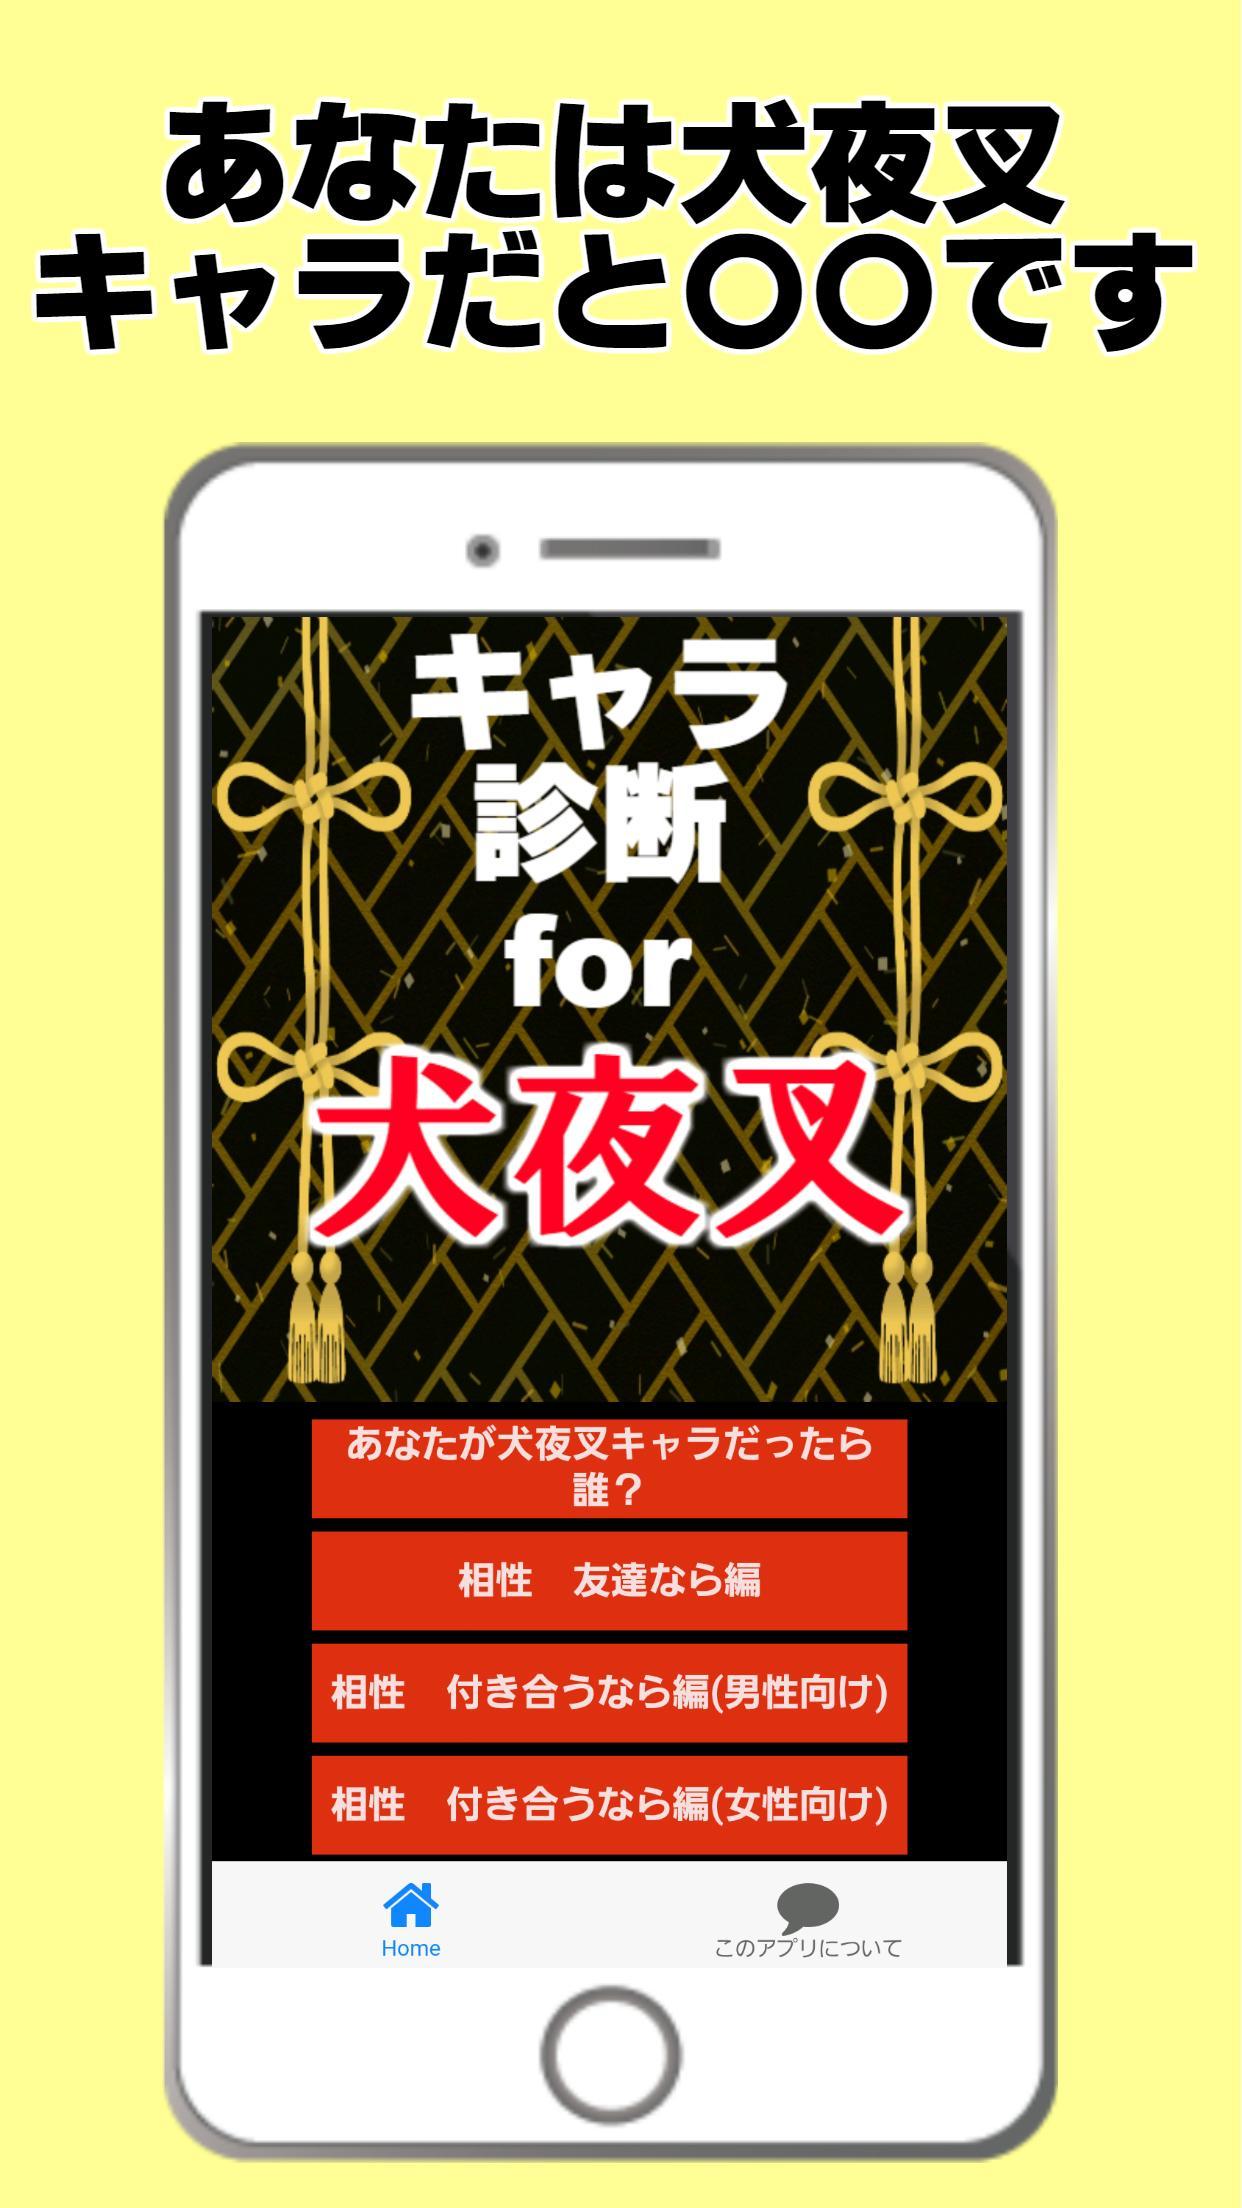 キャラ診断for犬夜叉 アプリ 戦国時代 かごめ 妖怪 アニメ For Android Apk Download